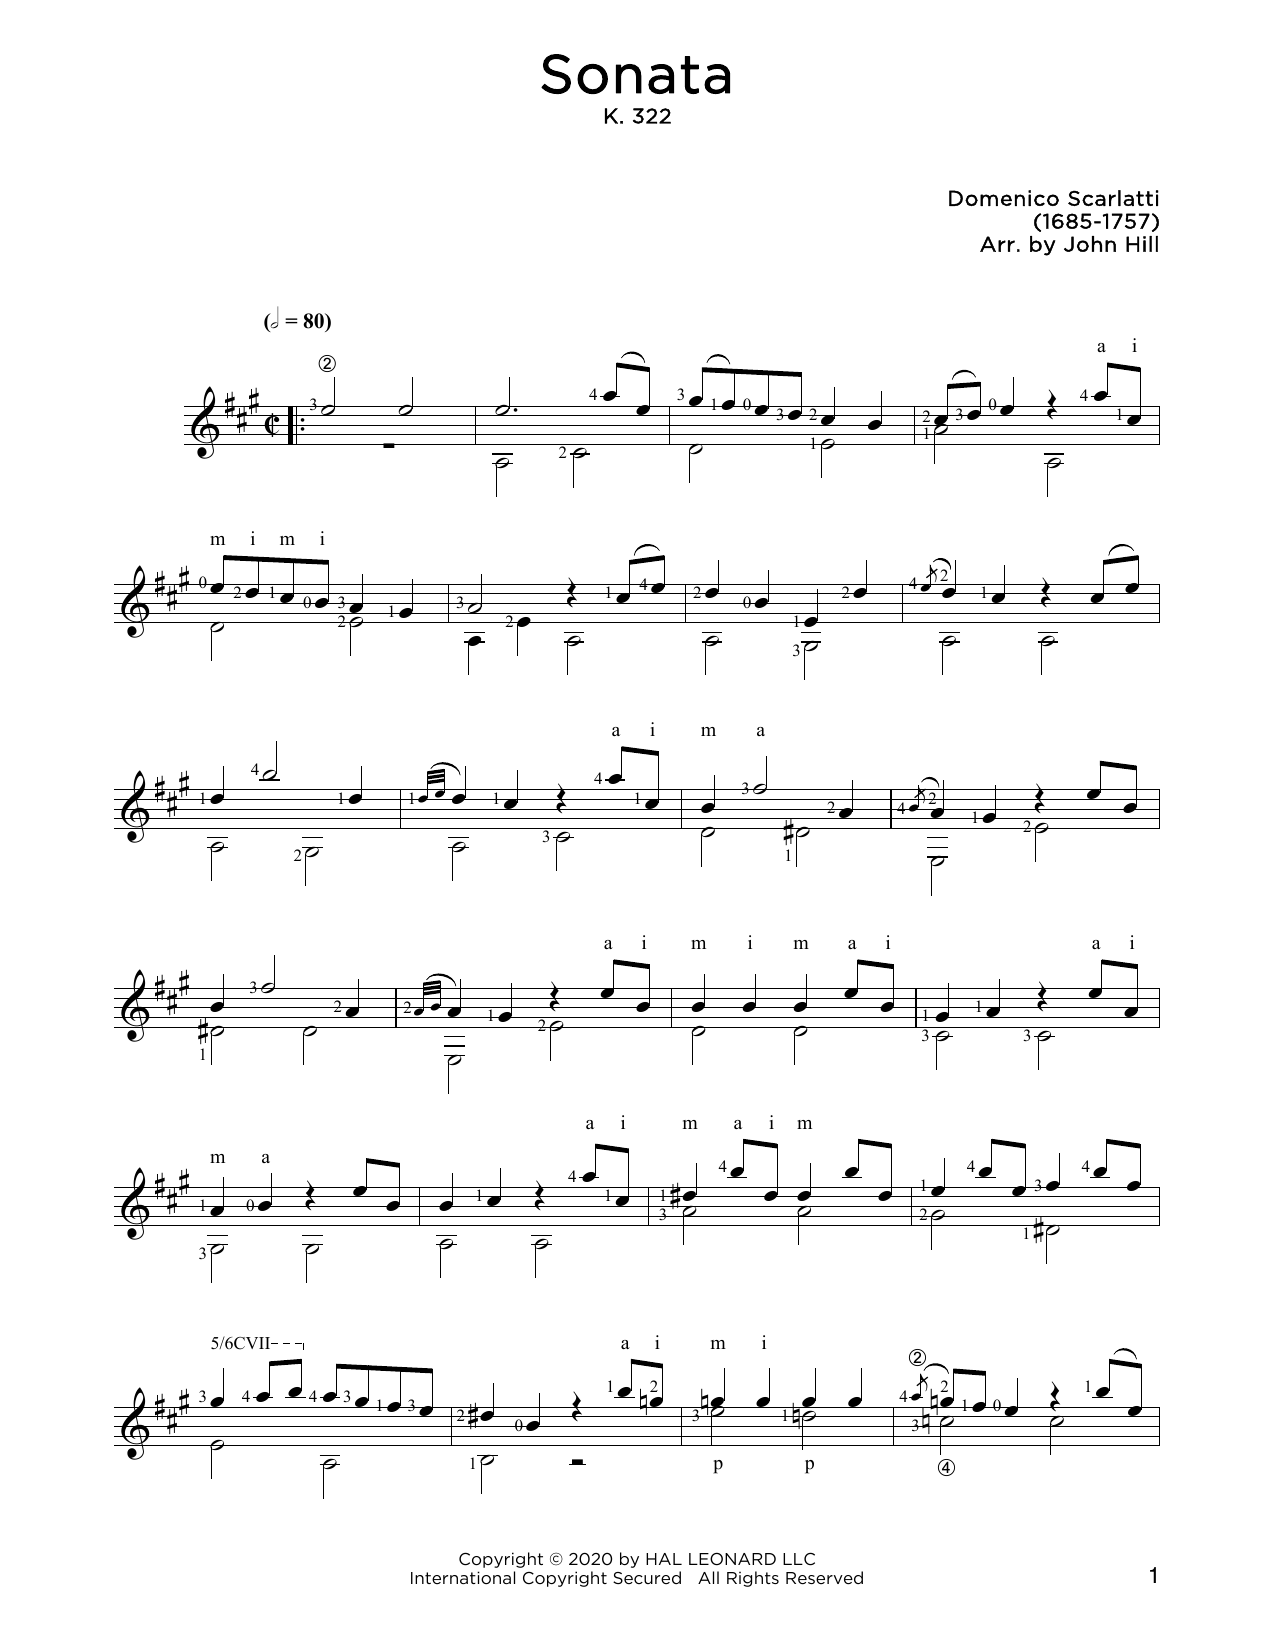 Download Domenico Scarlatti Sonata In A Sheet Music